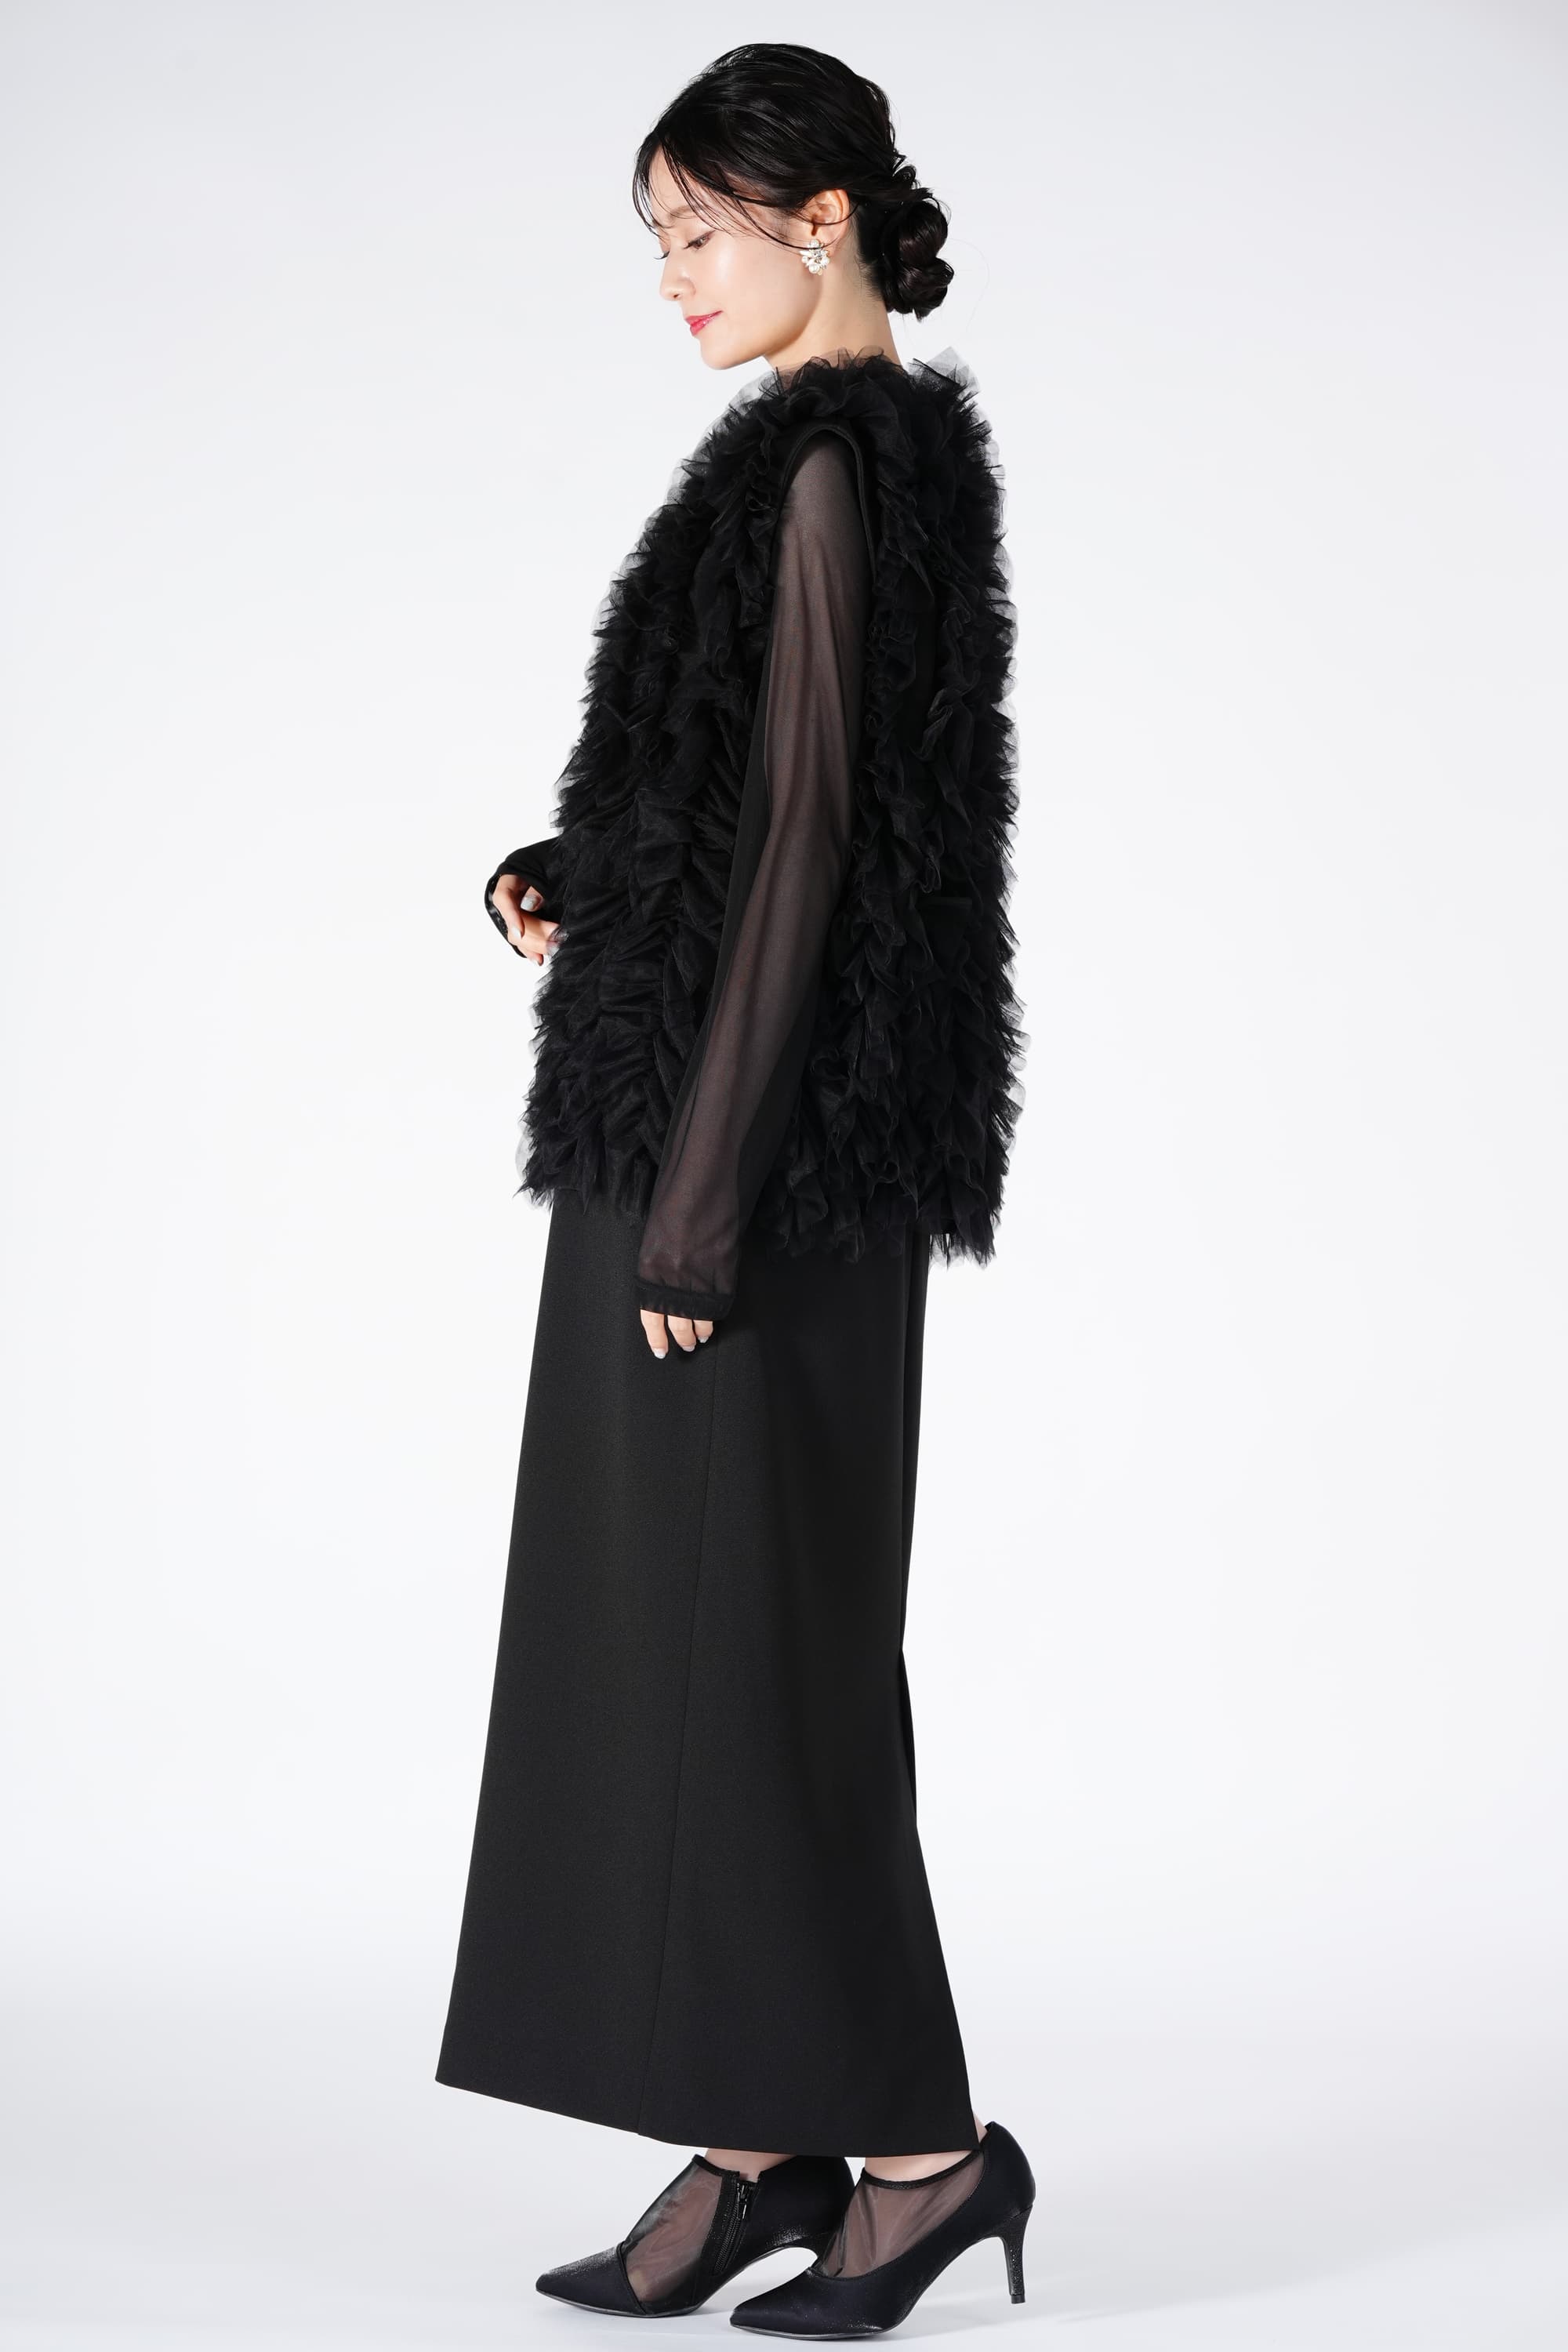 Ameri VINTAGE チュールベスト付きブラックドレス (M) をレンタル